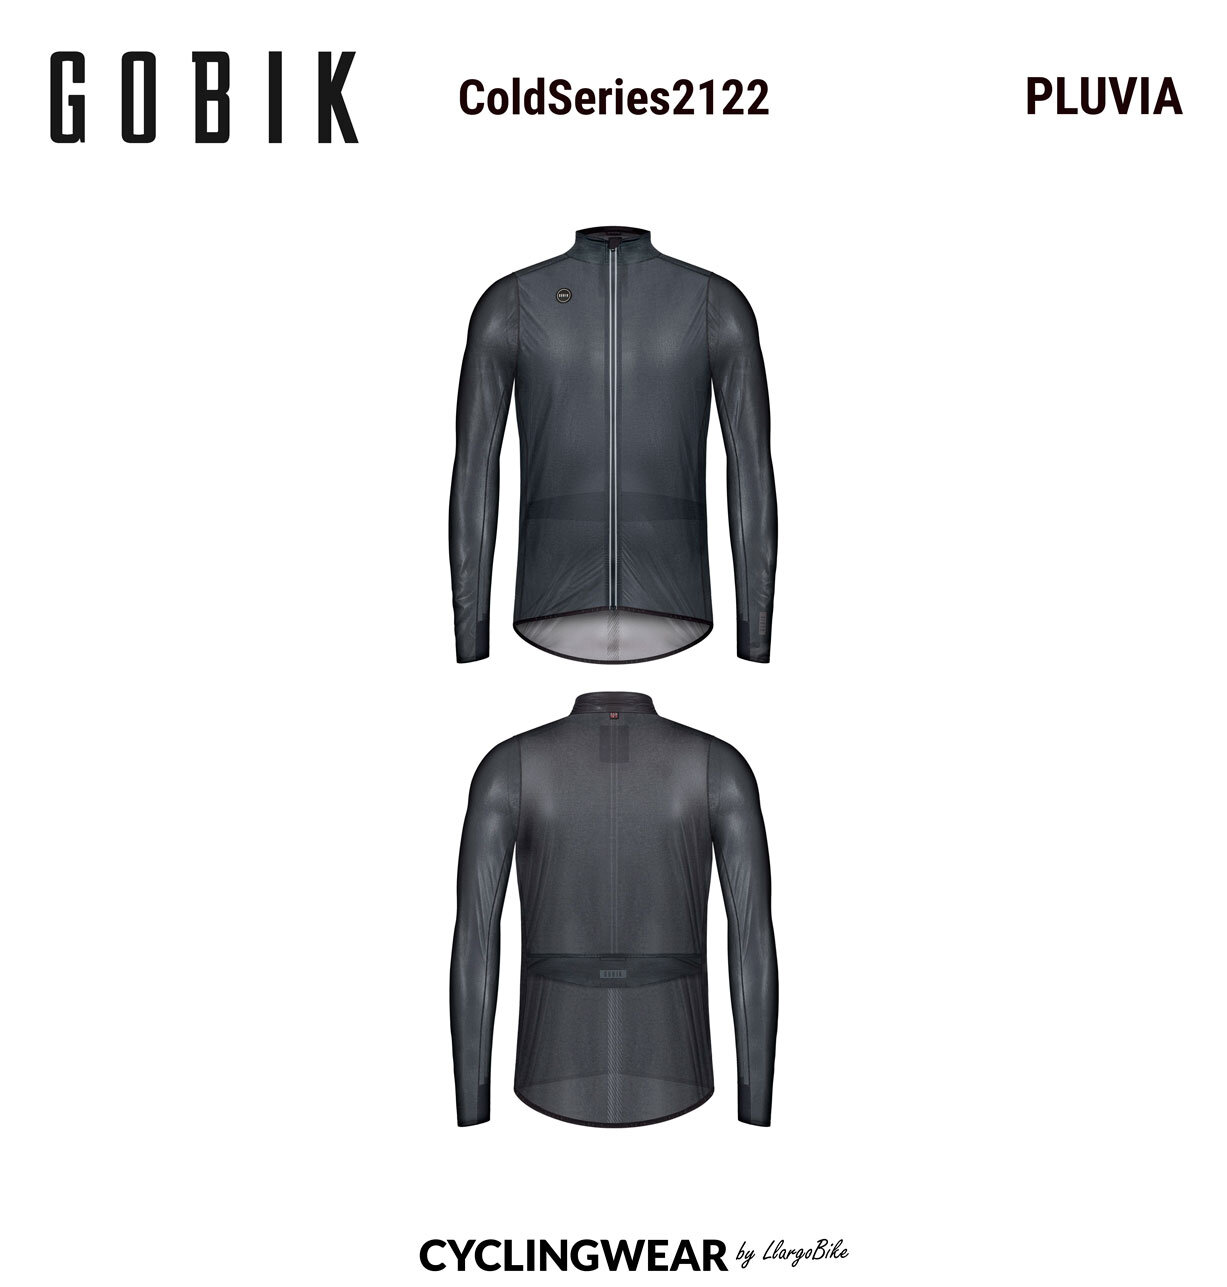 gobik-coldseries2122-pluvia-cyclingwear-by-llargobike-v01